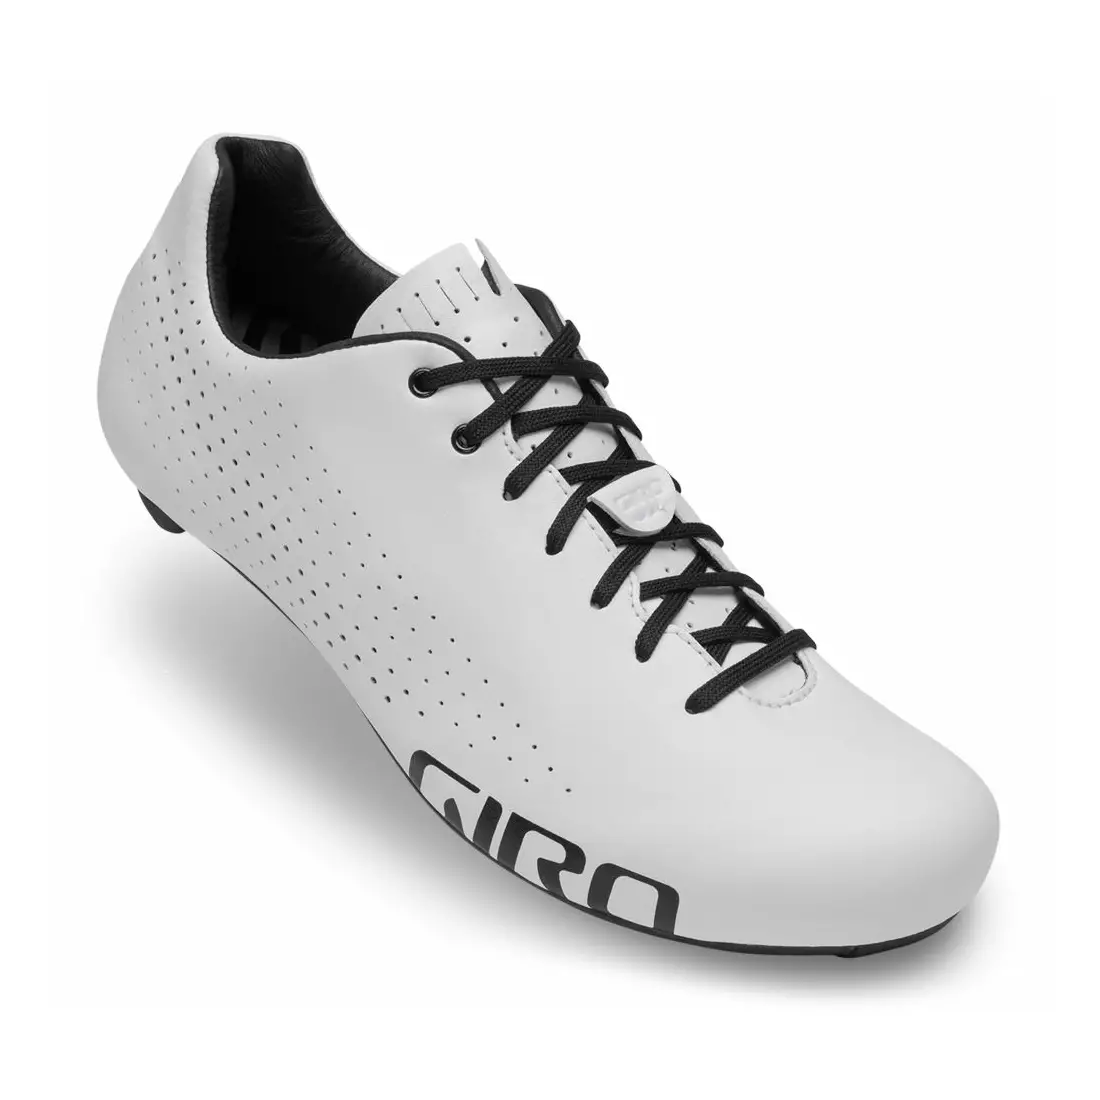 GIRO pánská cyklistická obuv EMPIRE white GR-7110759